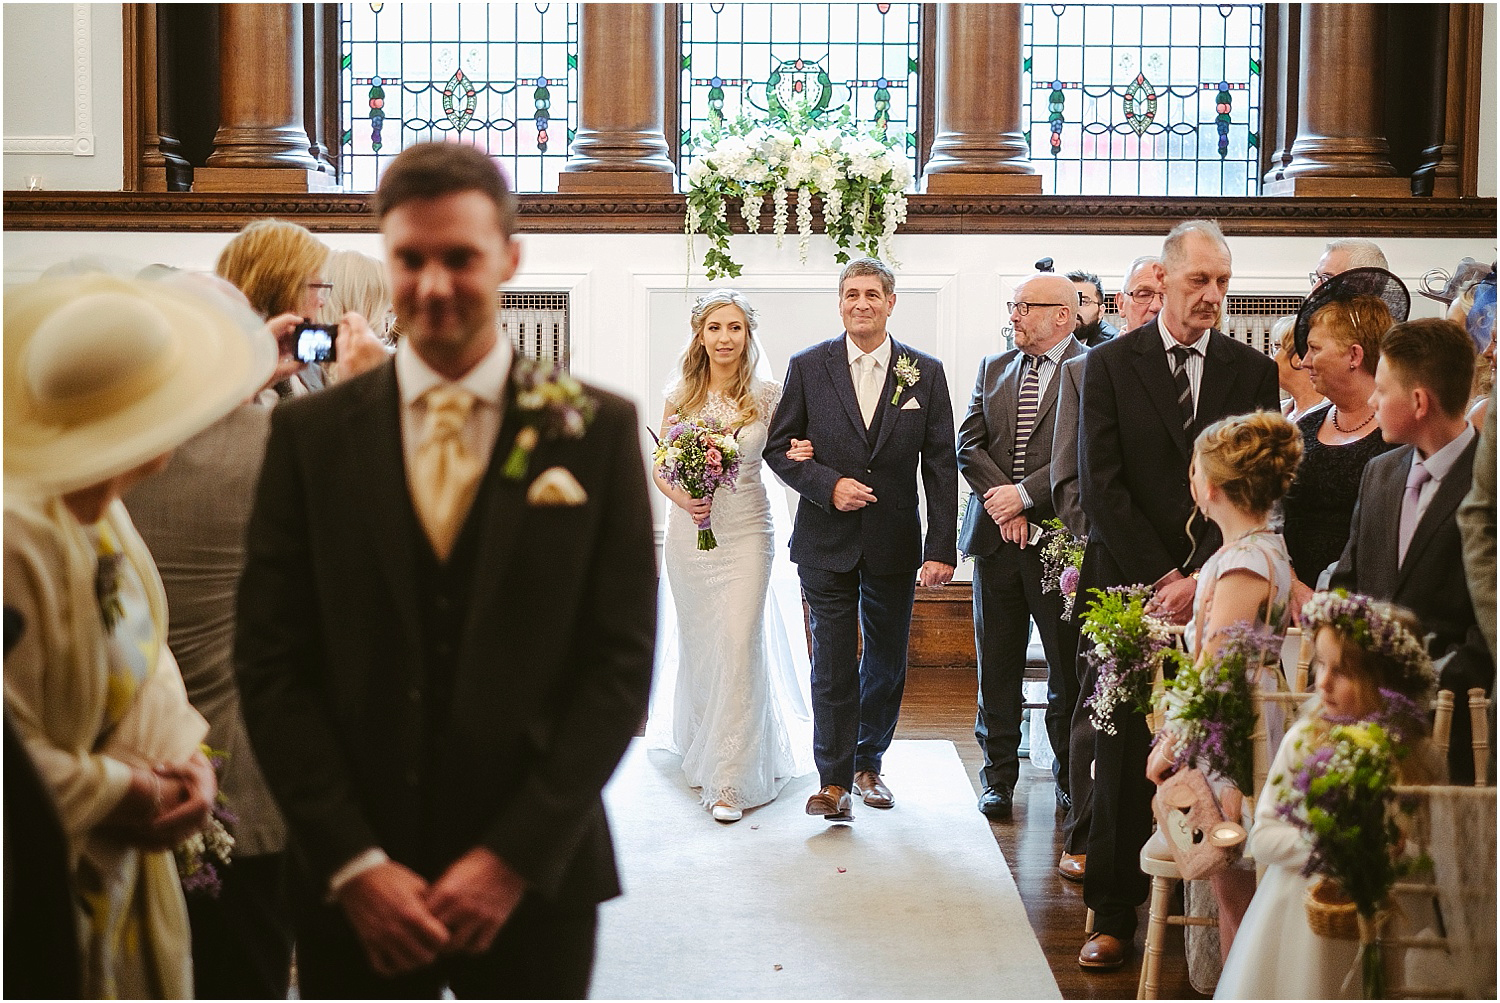 Beamish Hall wedding photography - Laura and Richard_0033.jpg